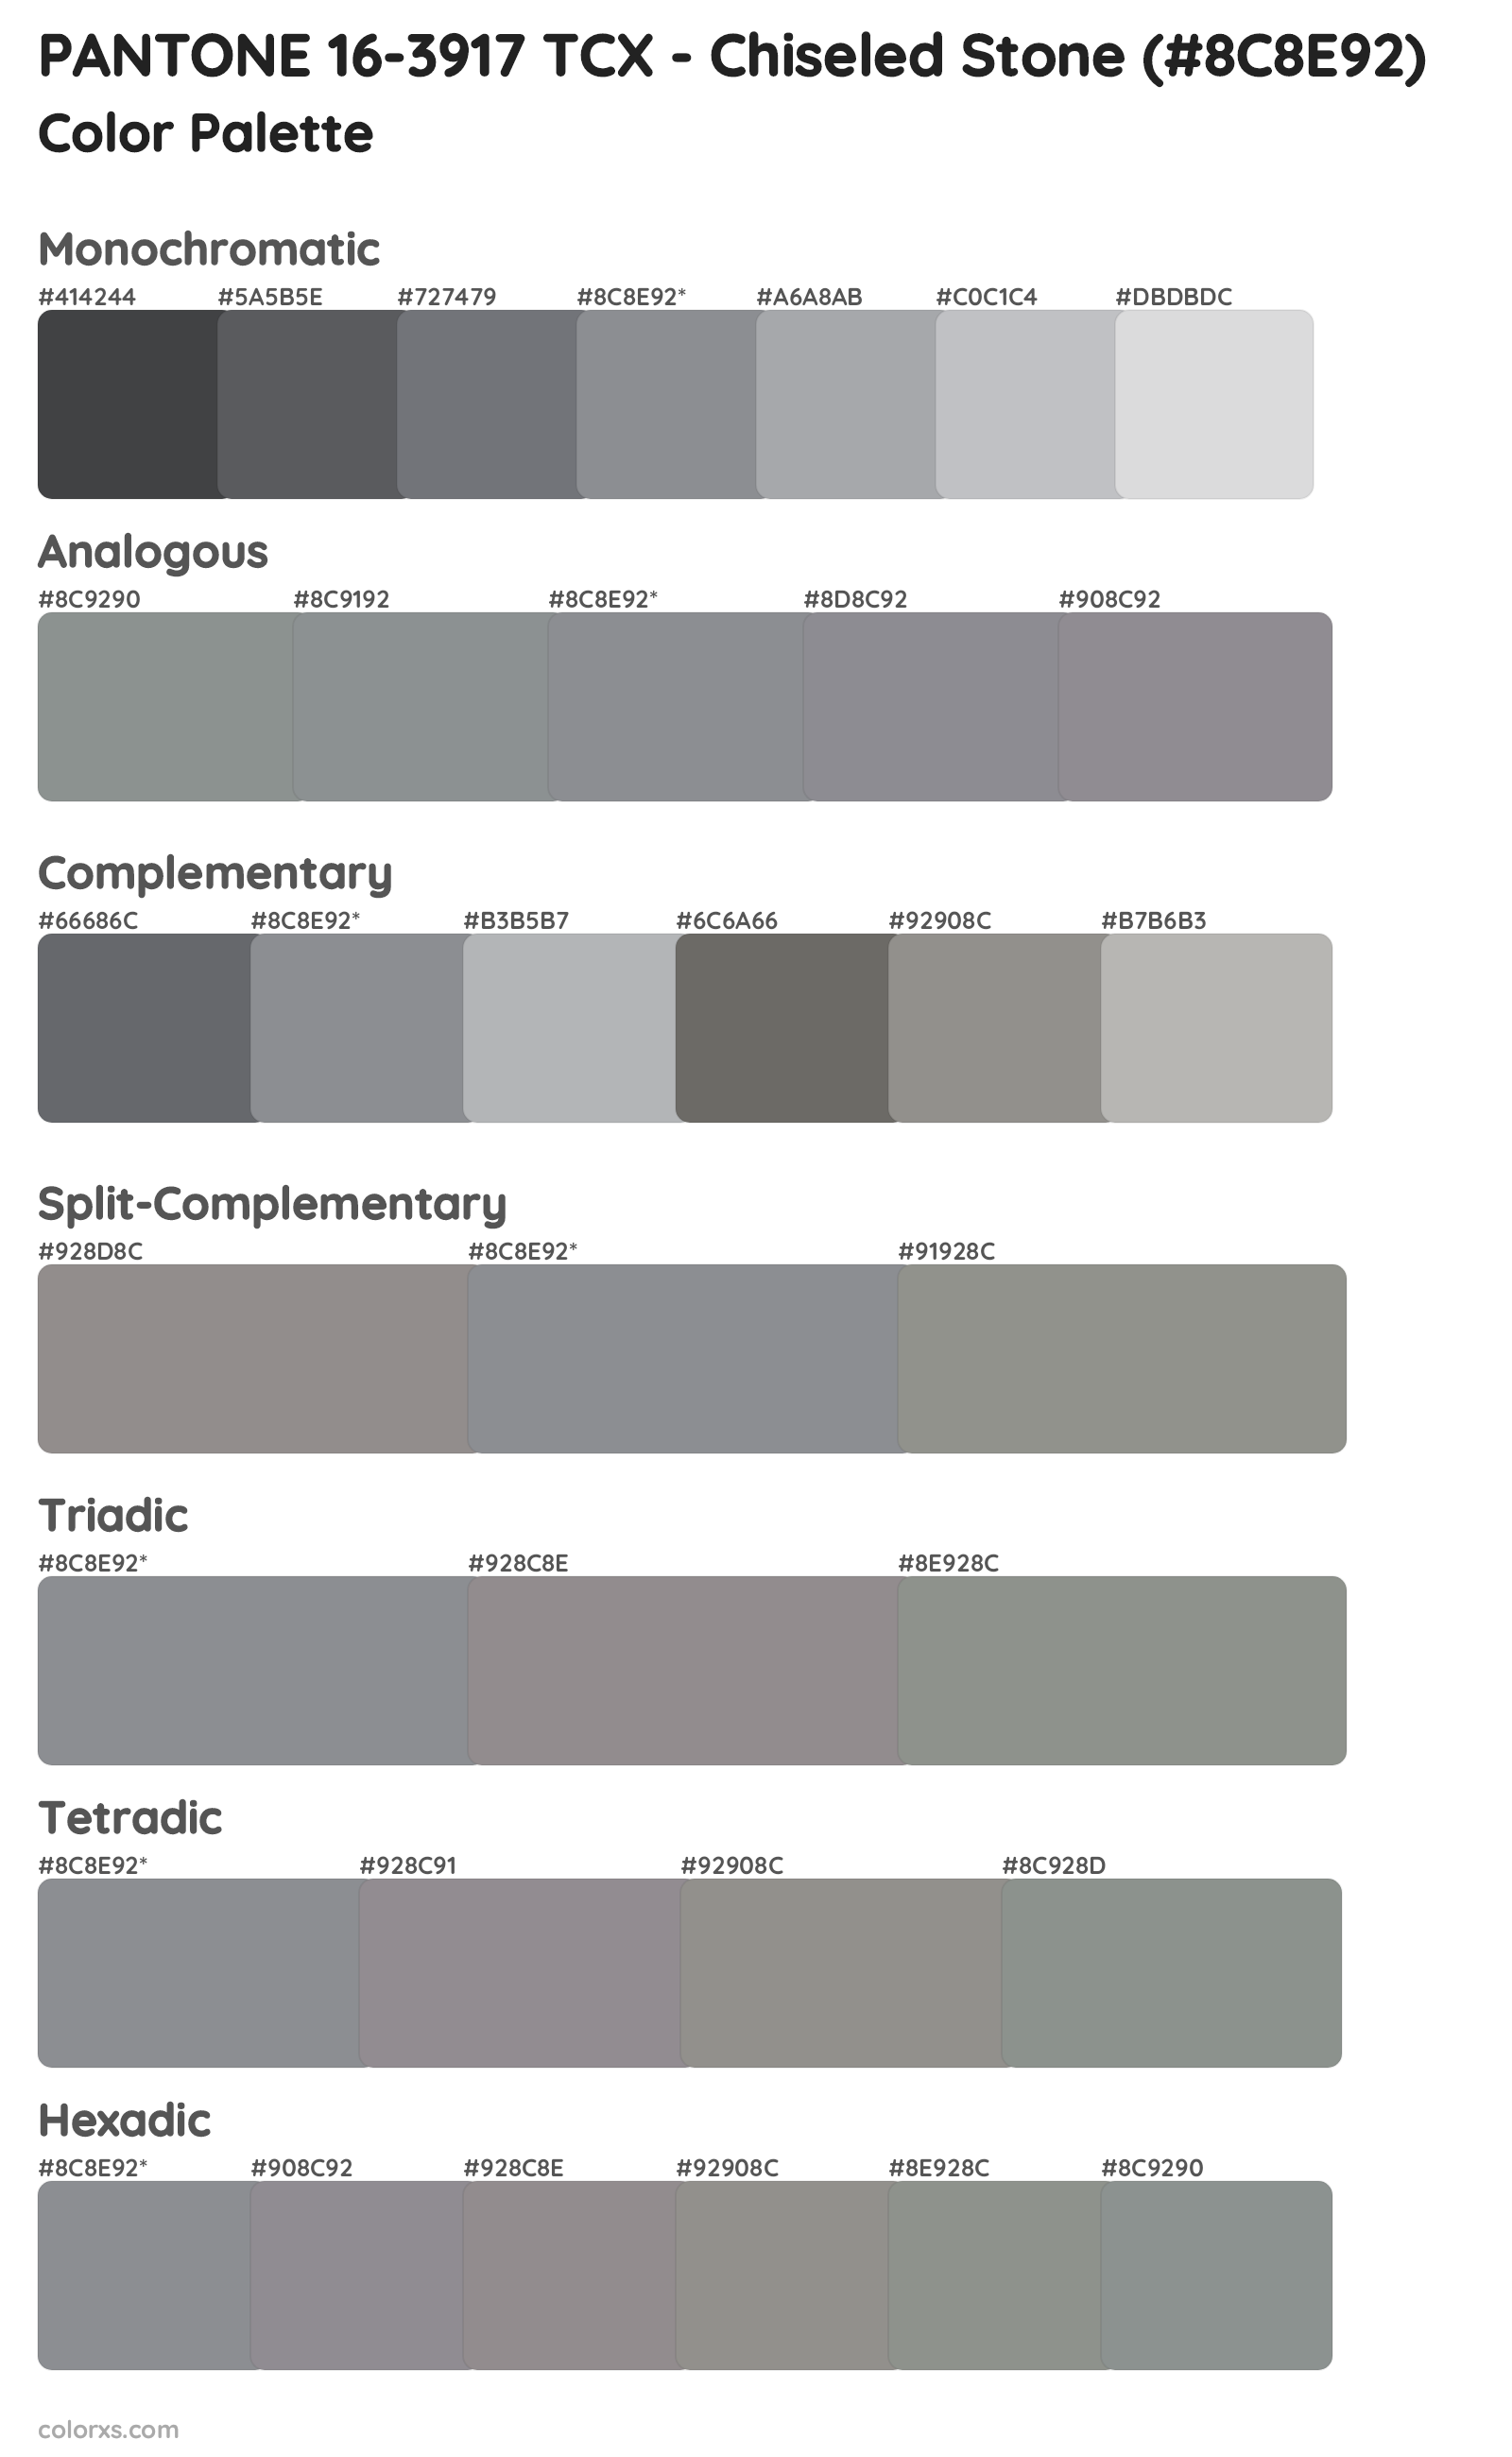 PANTONE 16-3917 TCX - Chiseled Stone Color Scheme Palettes